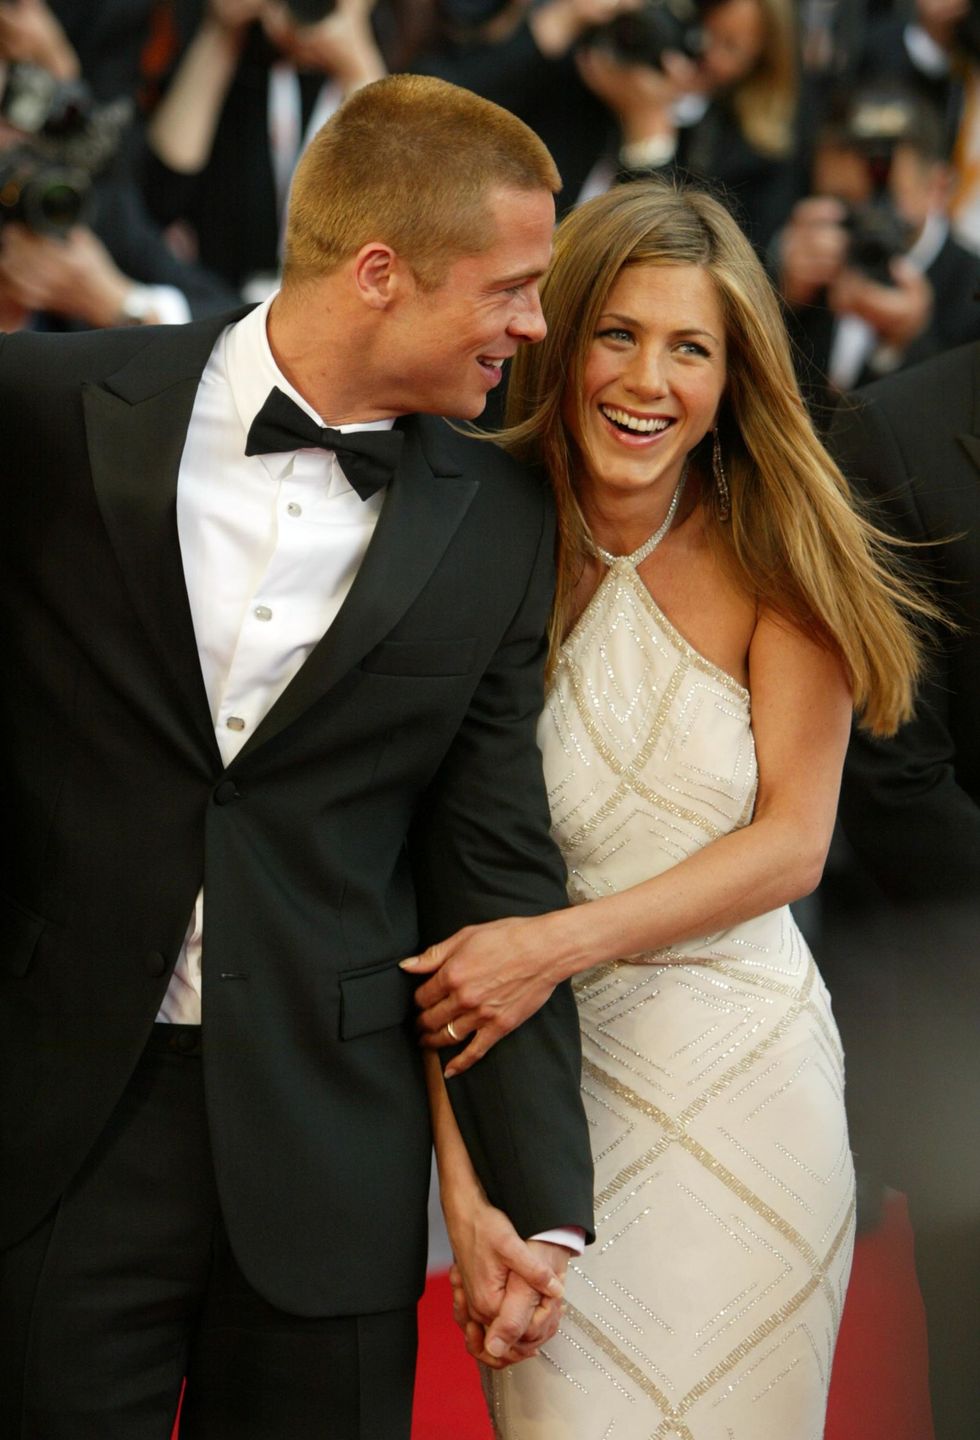 <p>多くのコスモ読者がご存知のように、お似合い夫婦の5年に及ぶ結婚生活が幕を閉じたのは、ブラピの<a href="http://www.thesun.ie/irishsol/homepage/showbiz/irishbizarre/2024479/Brad-Pitt-admits-he-fell-in-love-with-Angelina-Jolie-while-he-was-still-married-to-Jennifer-Aniston.html" target="_blank">不倫</a>だと言われている。お相手は、今年に<a href="http://www.cosmopolitan-jp.com/entertainment/celebrity/news/a2982/angelina-jolie-brad-pitt-file-divorce-statement/" target="_blank">離婚した</a>アンジェリーナ・ジョリー。最近では、お抱えのボディーガードが「ブラピは、アンジーのことよりもジェニファーを深く愛してた。2人は気が合っていたし、諍いもなかったんだ…アンジーに出会うまでは」と<a href="http://metro.co.uk/2016/11/29/brad-pitts-ex-bodyguard-says-he-was-happier-with-jennifer-aniston-than-with-angelina-jolie-6288937/" target="_blank">語る</a>も、ジェニファーは現夫のジャスティン・セローと<a href="http://www.dailymail.co.uk/tvshowbiz/article-3995272/Jennifer-Aniston-reveals-gift-s-time-hubby-Justin-Theroux.html" target="_blank">ラブラブ</a>で、もはや彼らのことは眼中にないみたい…。<span class="redactor-invisible-space" data-verified="redactor" data-redactor-tag="span" data-redactor-class="redactor-invisible-space"></span></p>